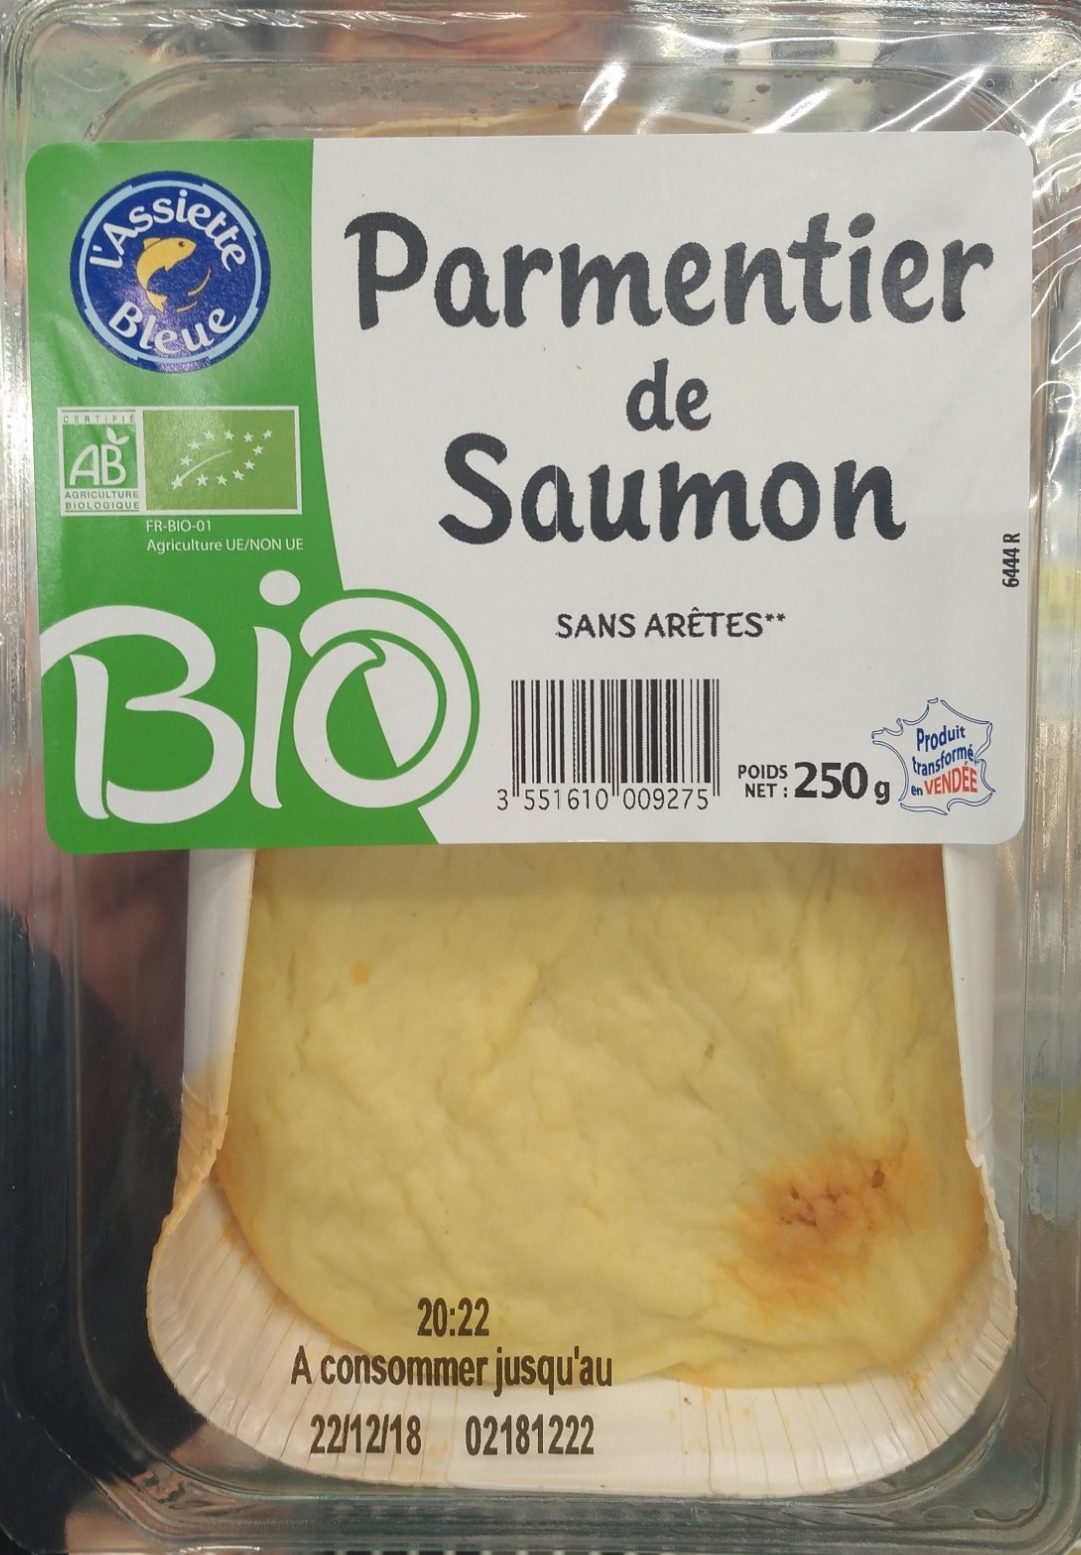 Parmentier de saumon - Product - fr